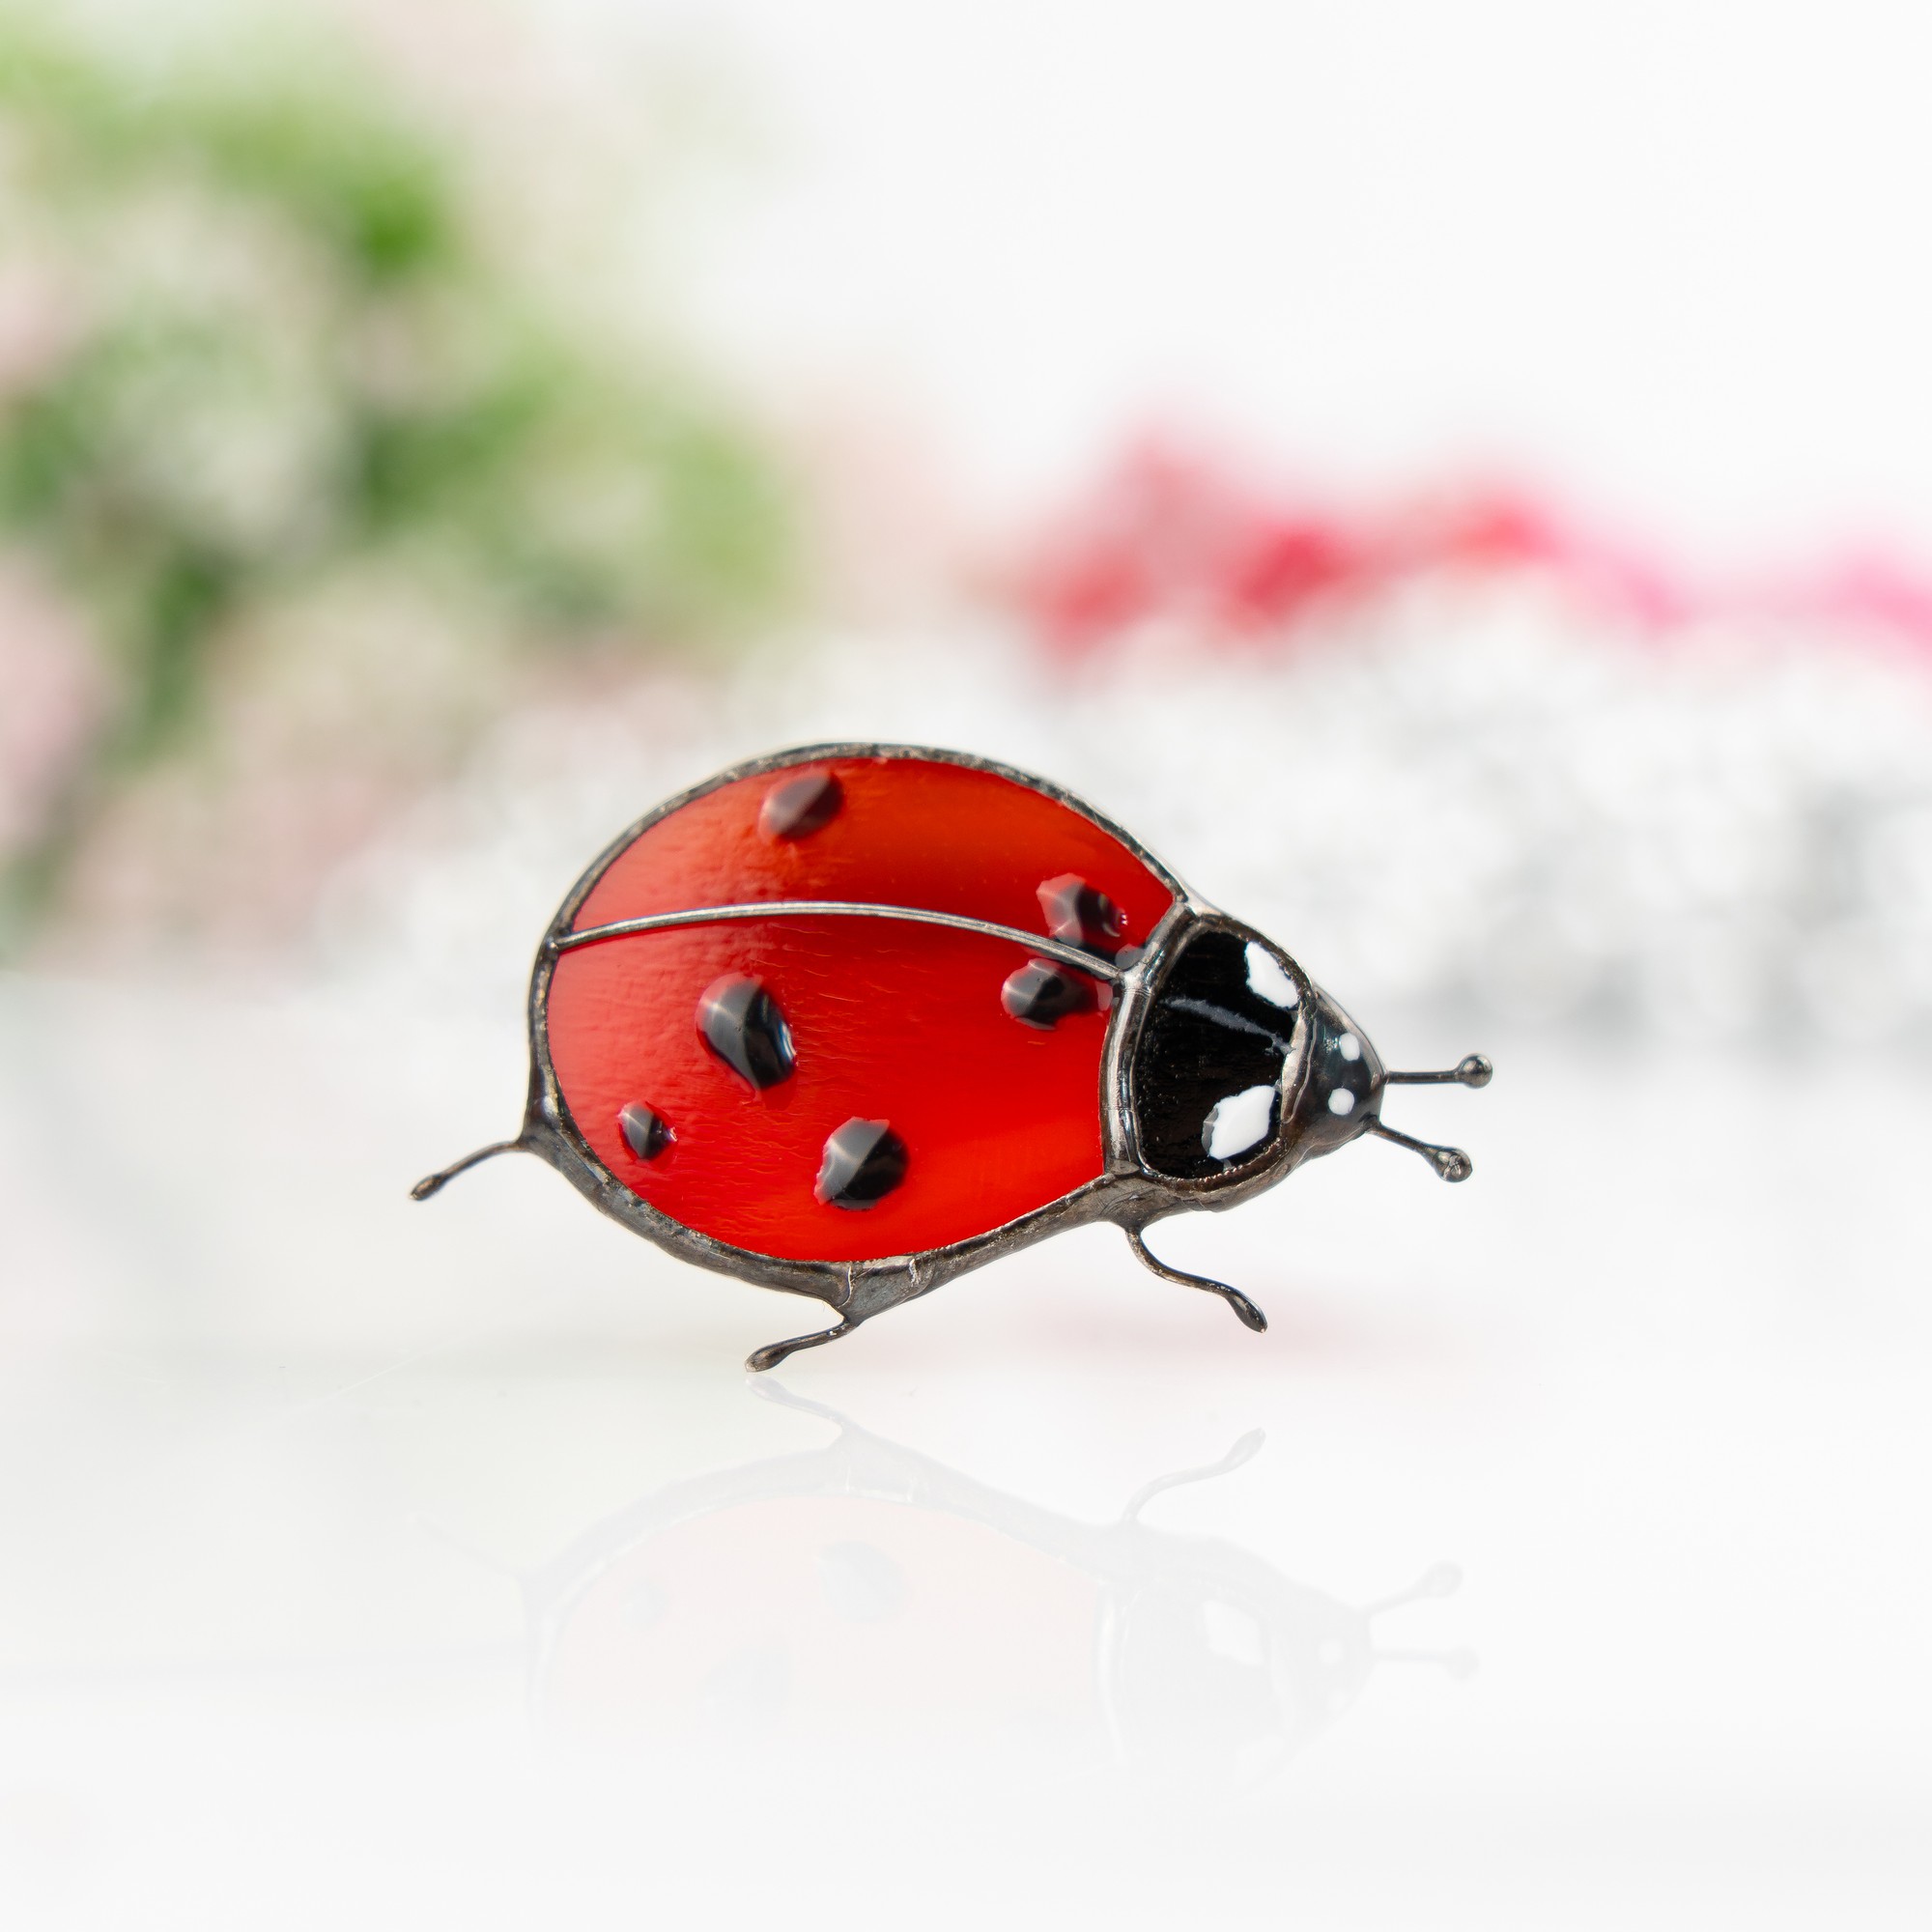 Stained glass ladybug jewelry